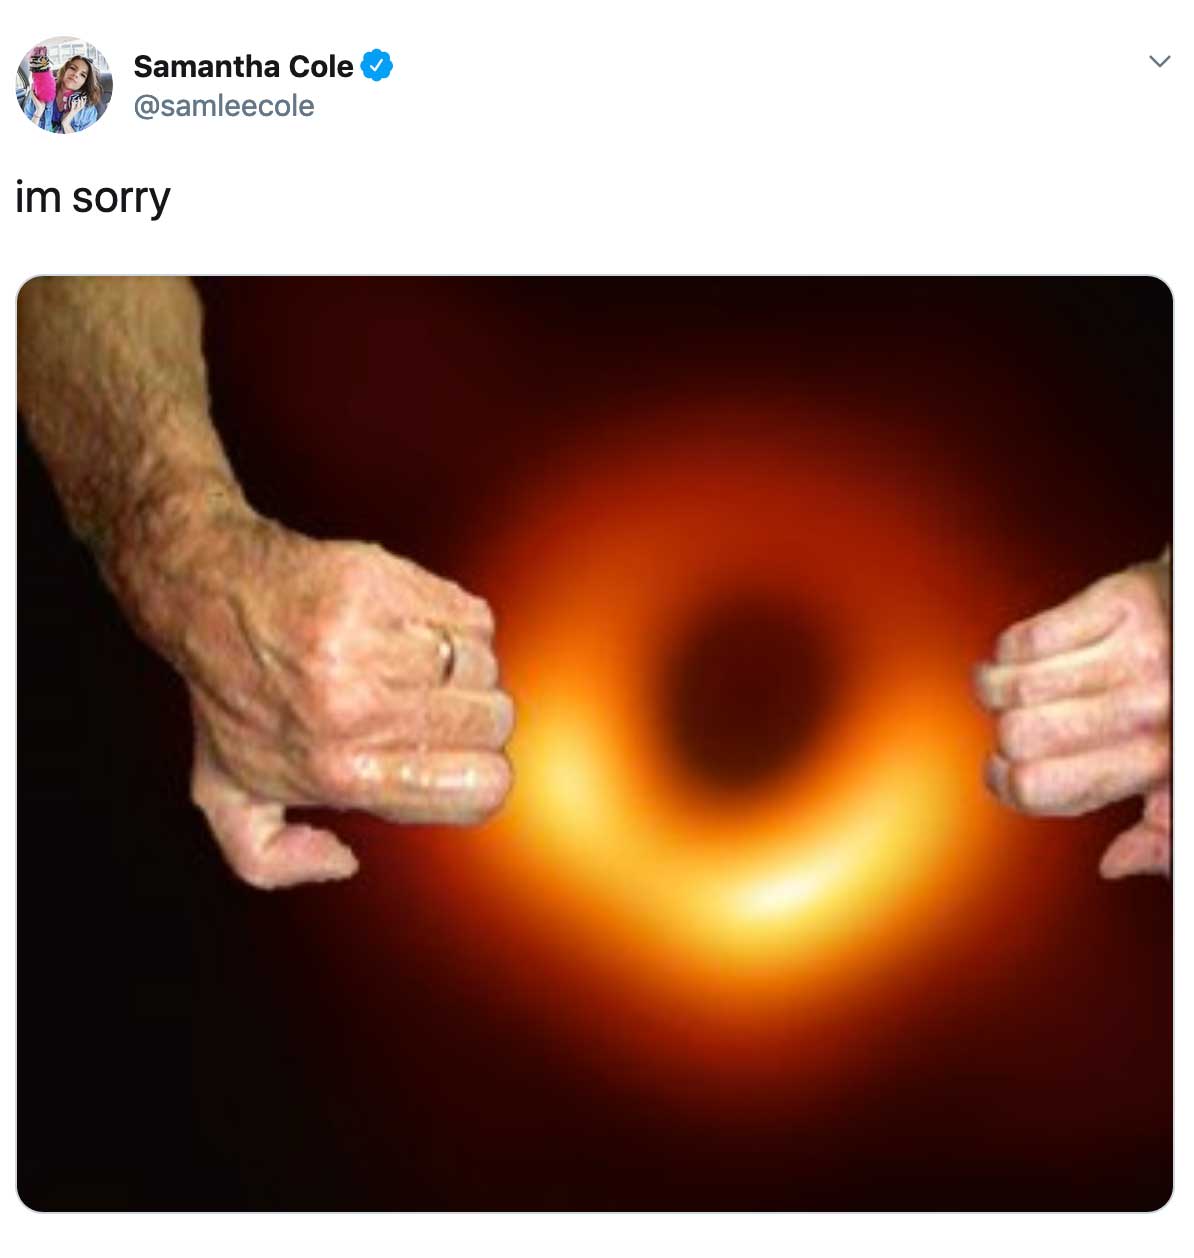 Goatse black hole photo meme with caption, i'm sorry.